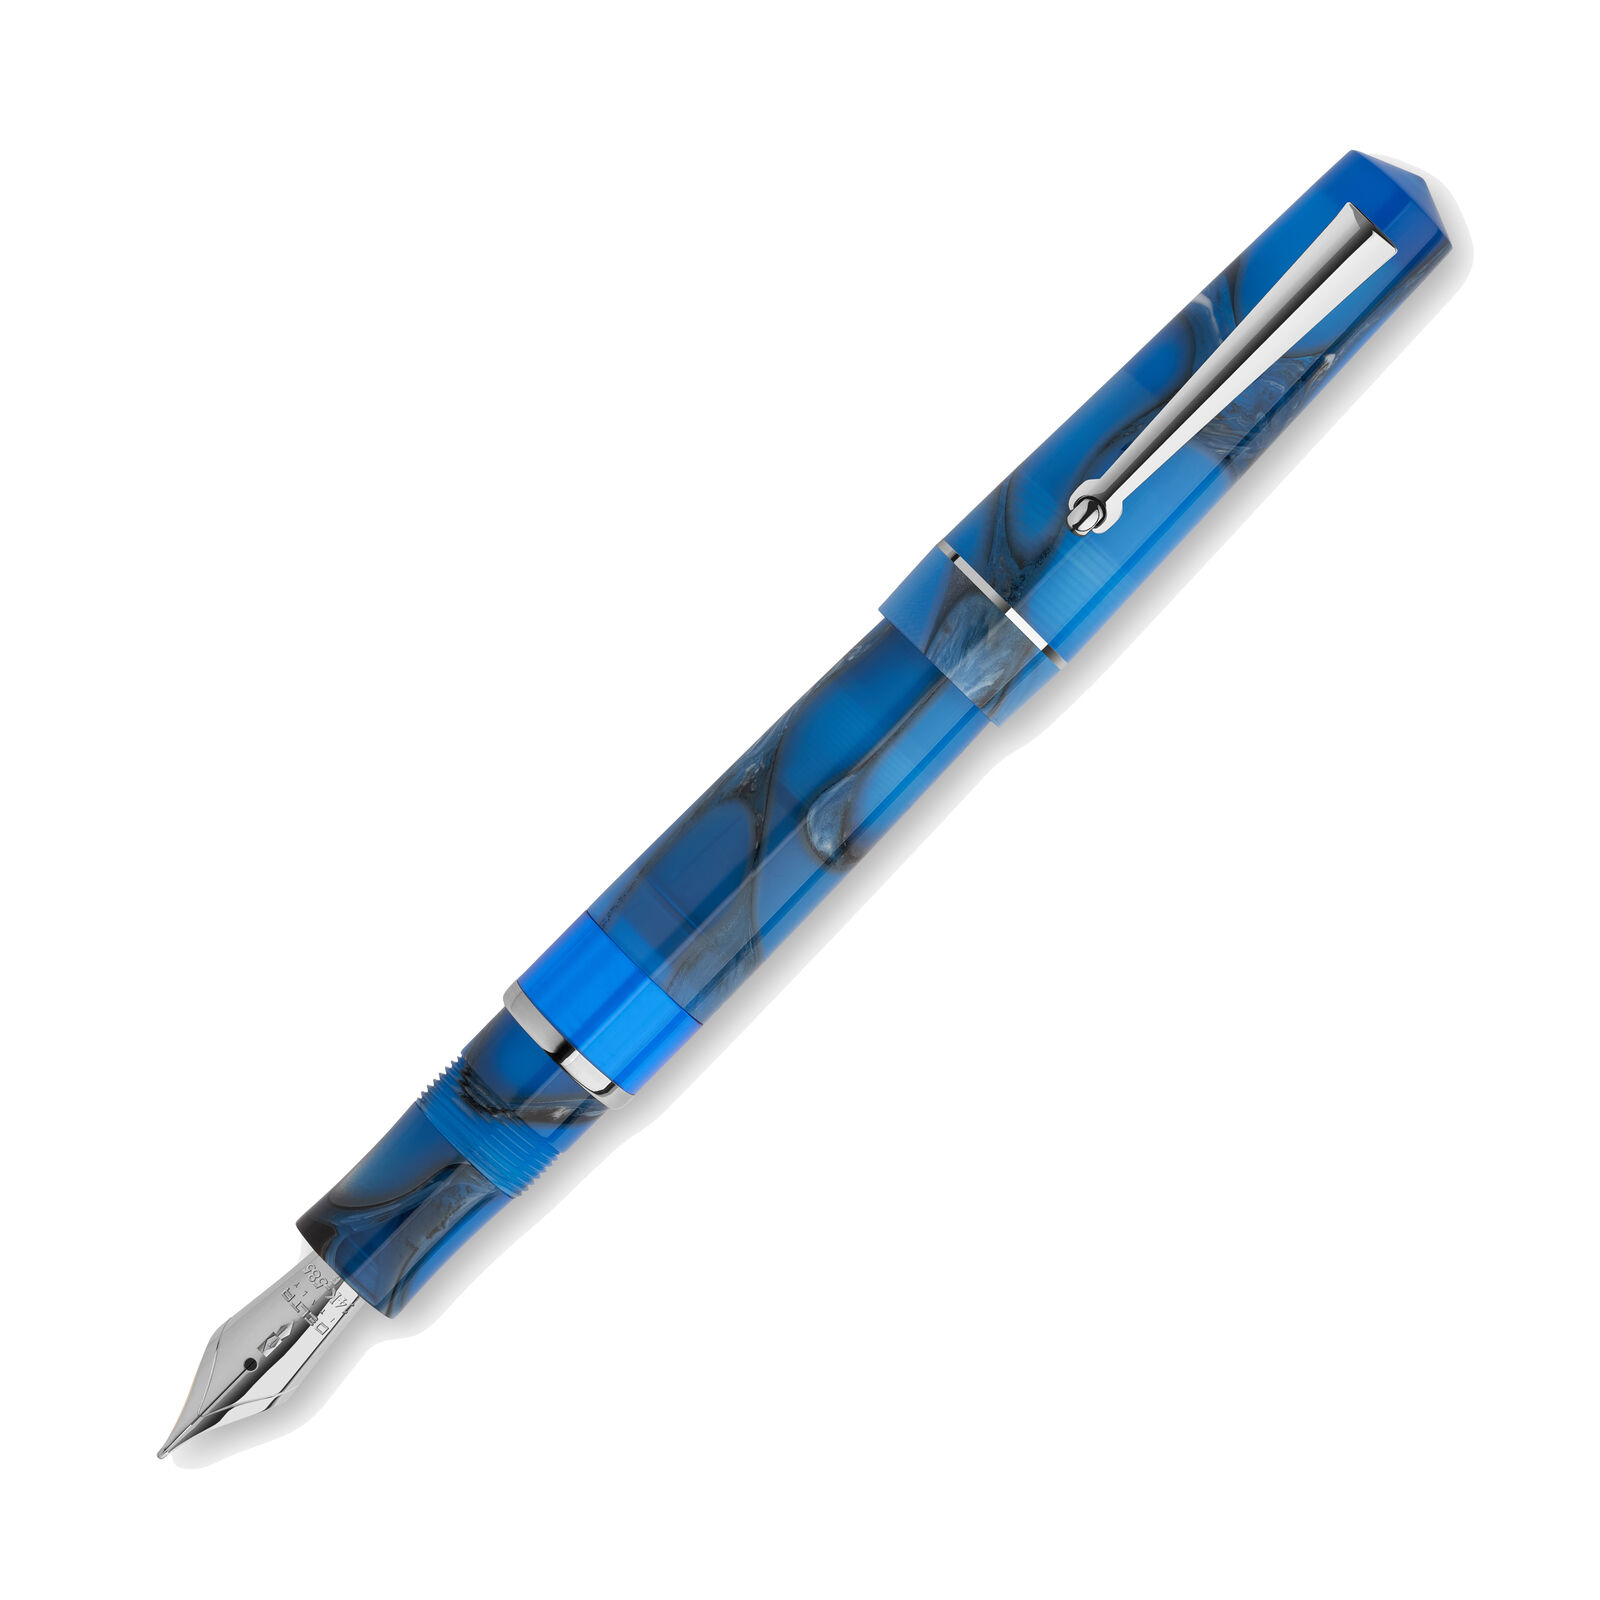 Delta Duna Piston Fountain Pen in Blue - Flexible Fine Point - NEW in Box